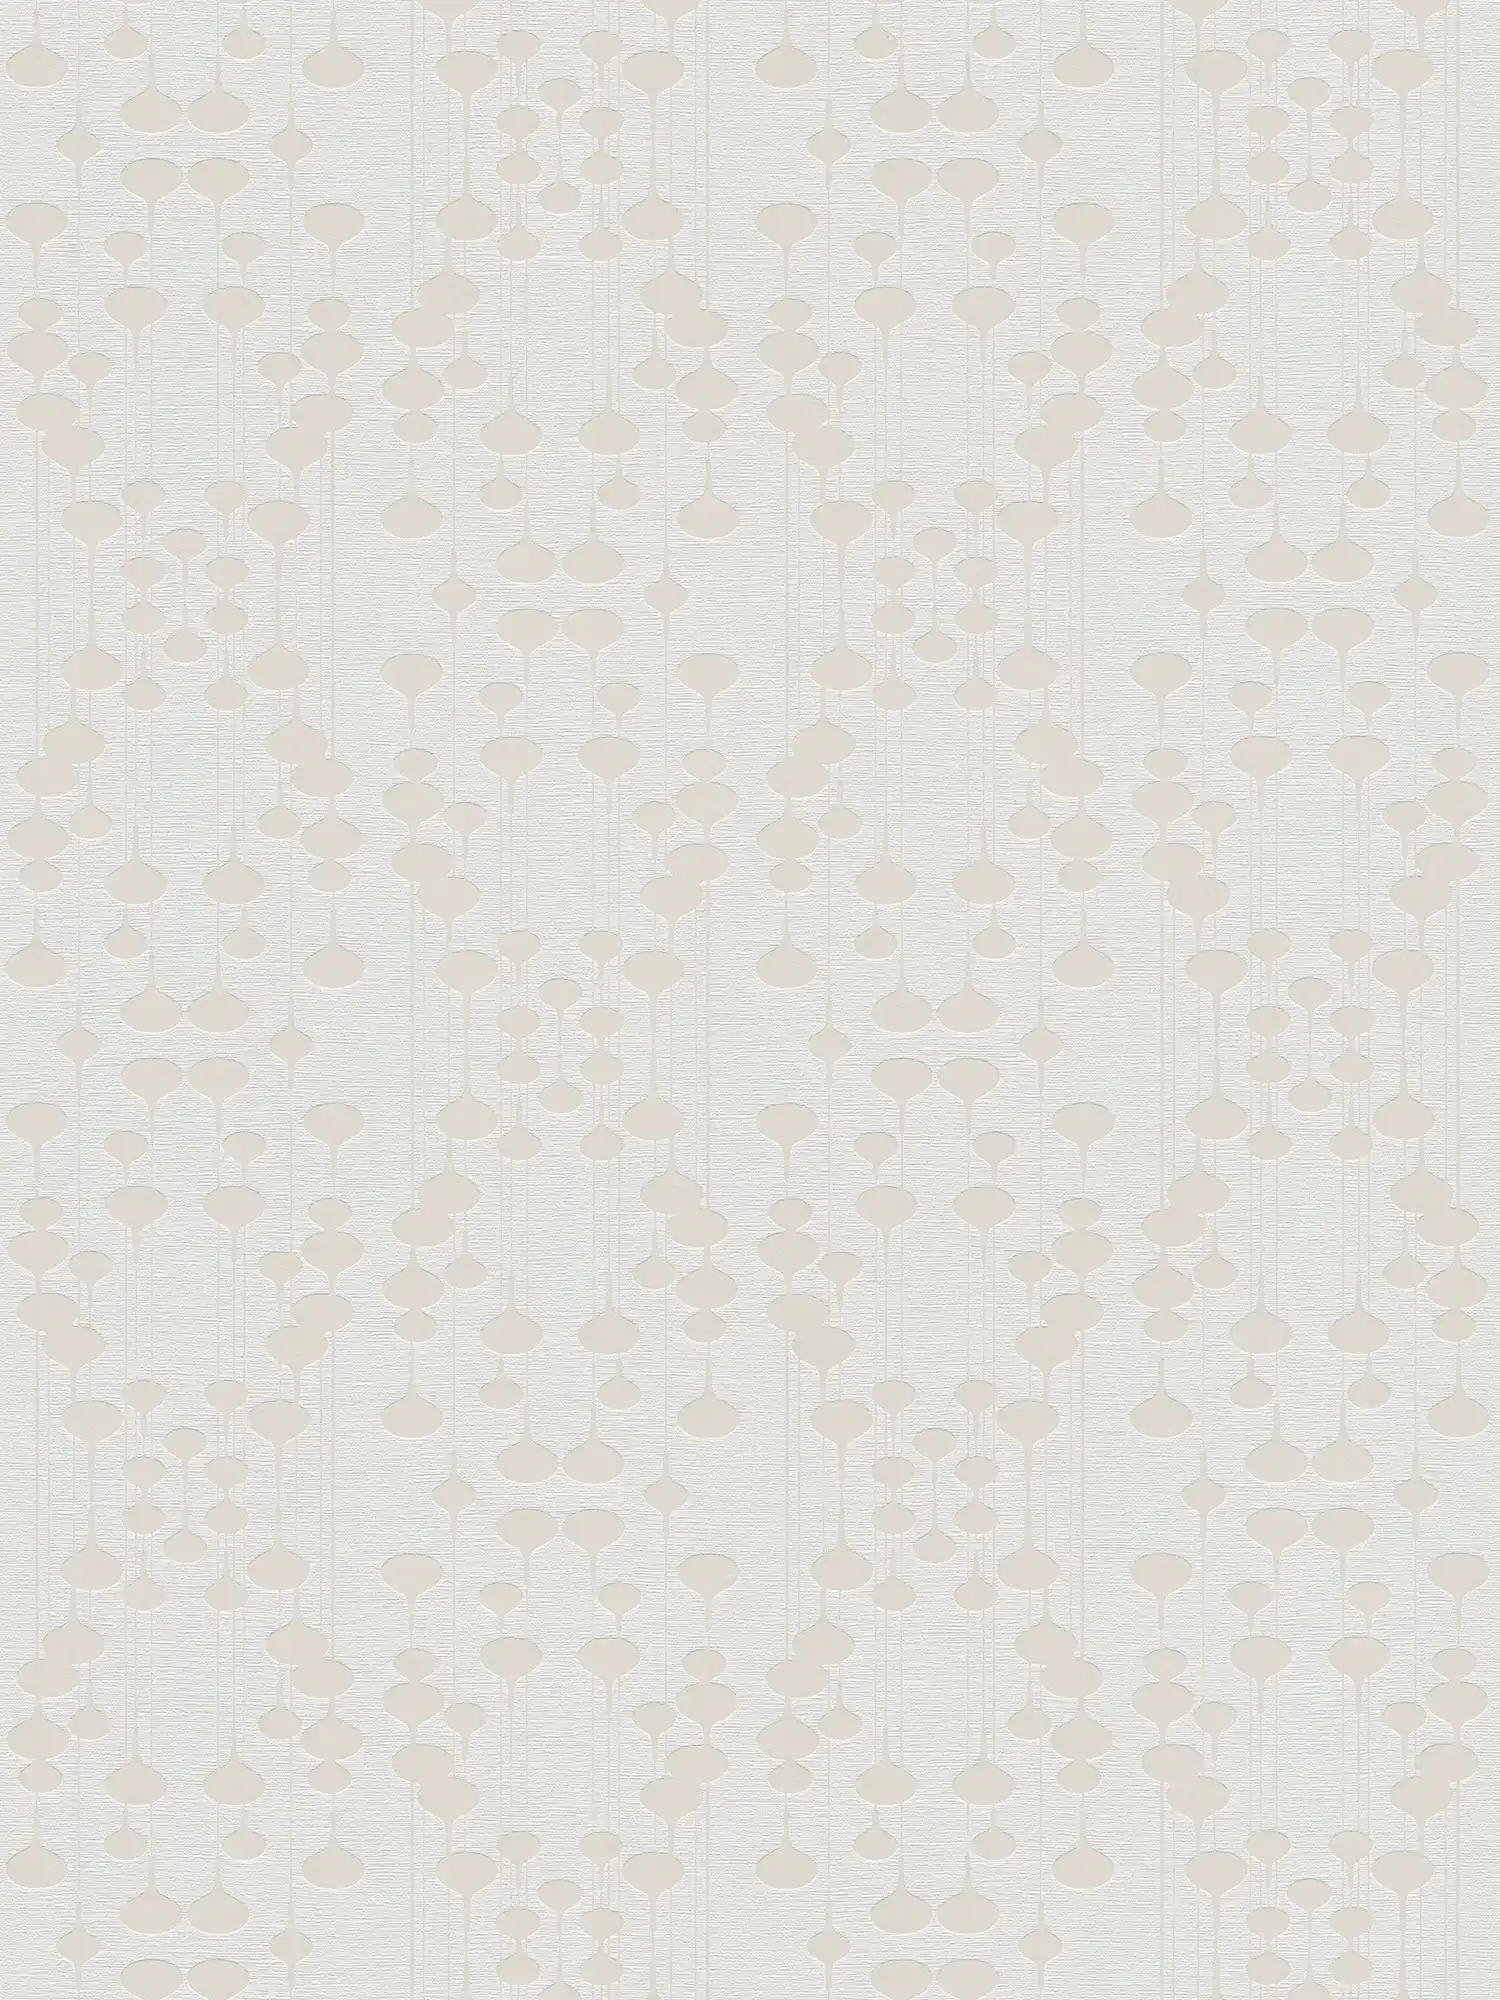 Carta da parati in tessuto non tessuto con design retrò ed effetto metallizzato - bianco, beige
